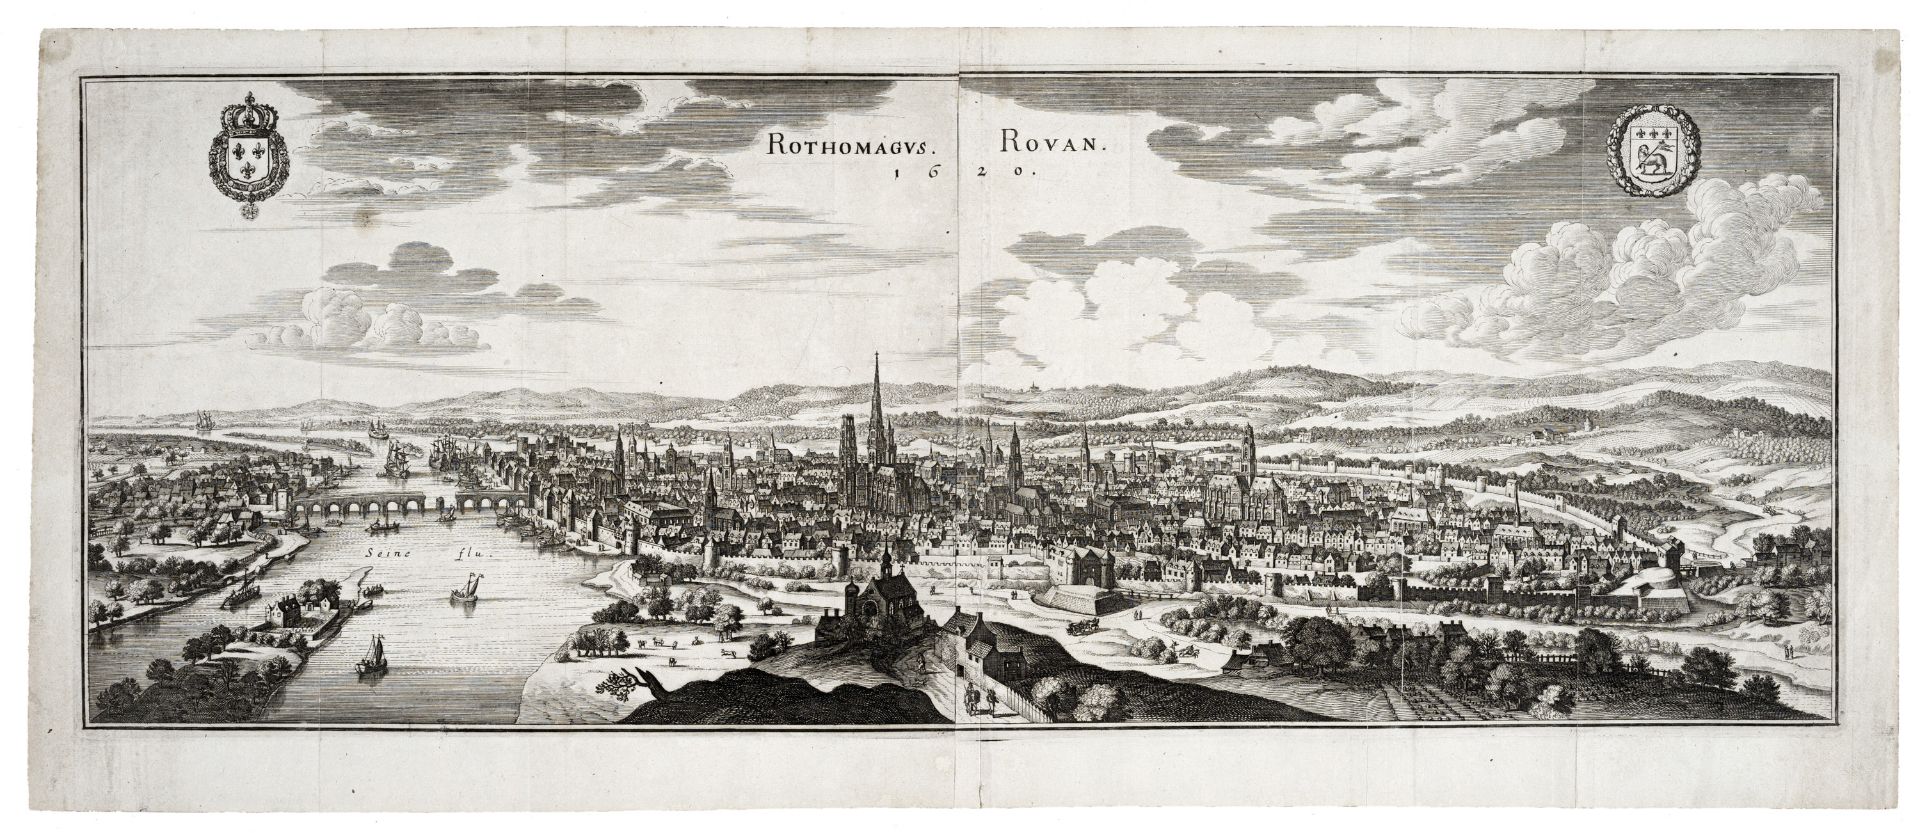 Matthäus Merian d.J. "Rothomagus. Rouan." (Rouen). 1657.